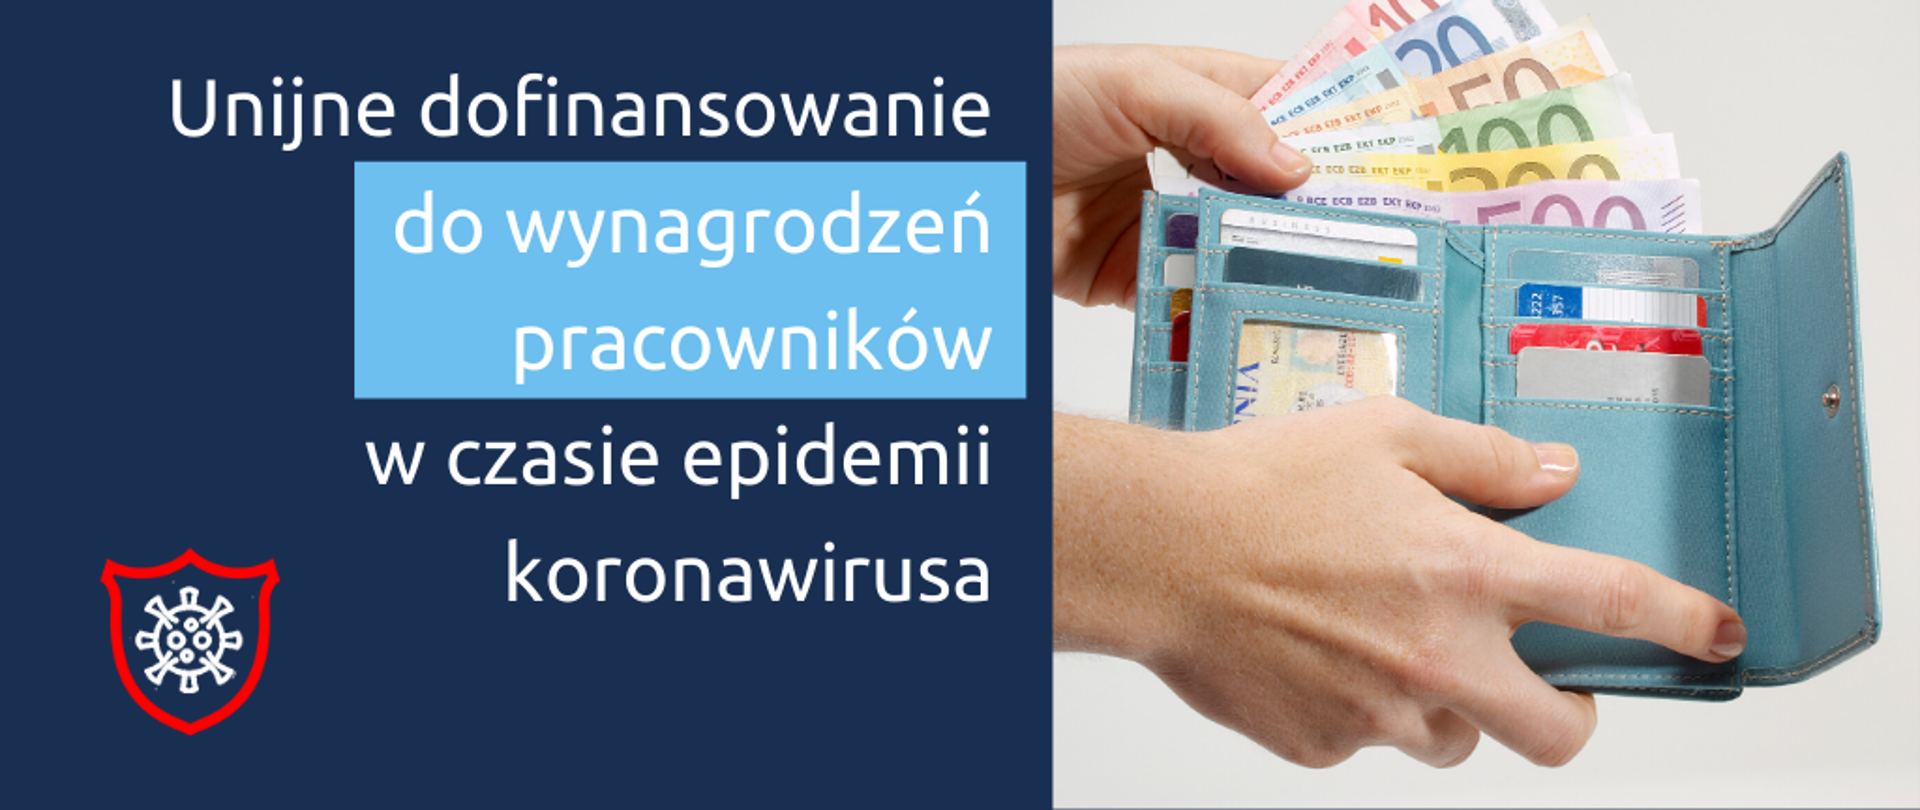 Biały napis na granatowym tle: Unijne dofinansowanie do wynagrodzeń pracowników w czasie epidemii koronawirusa. Obok zdjęcie portfela z kartami i banknotami euro.